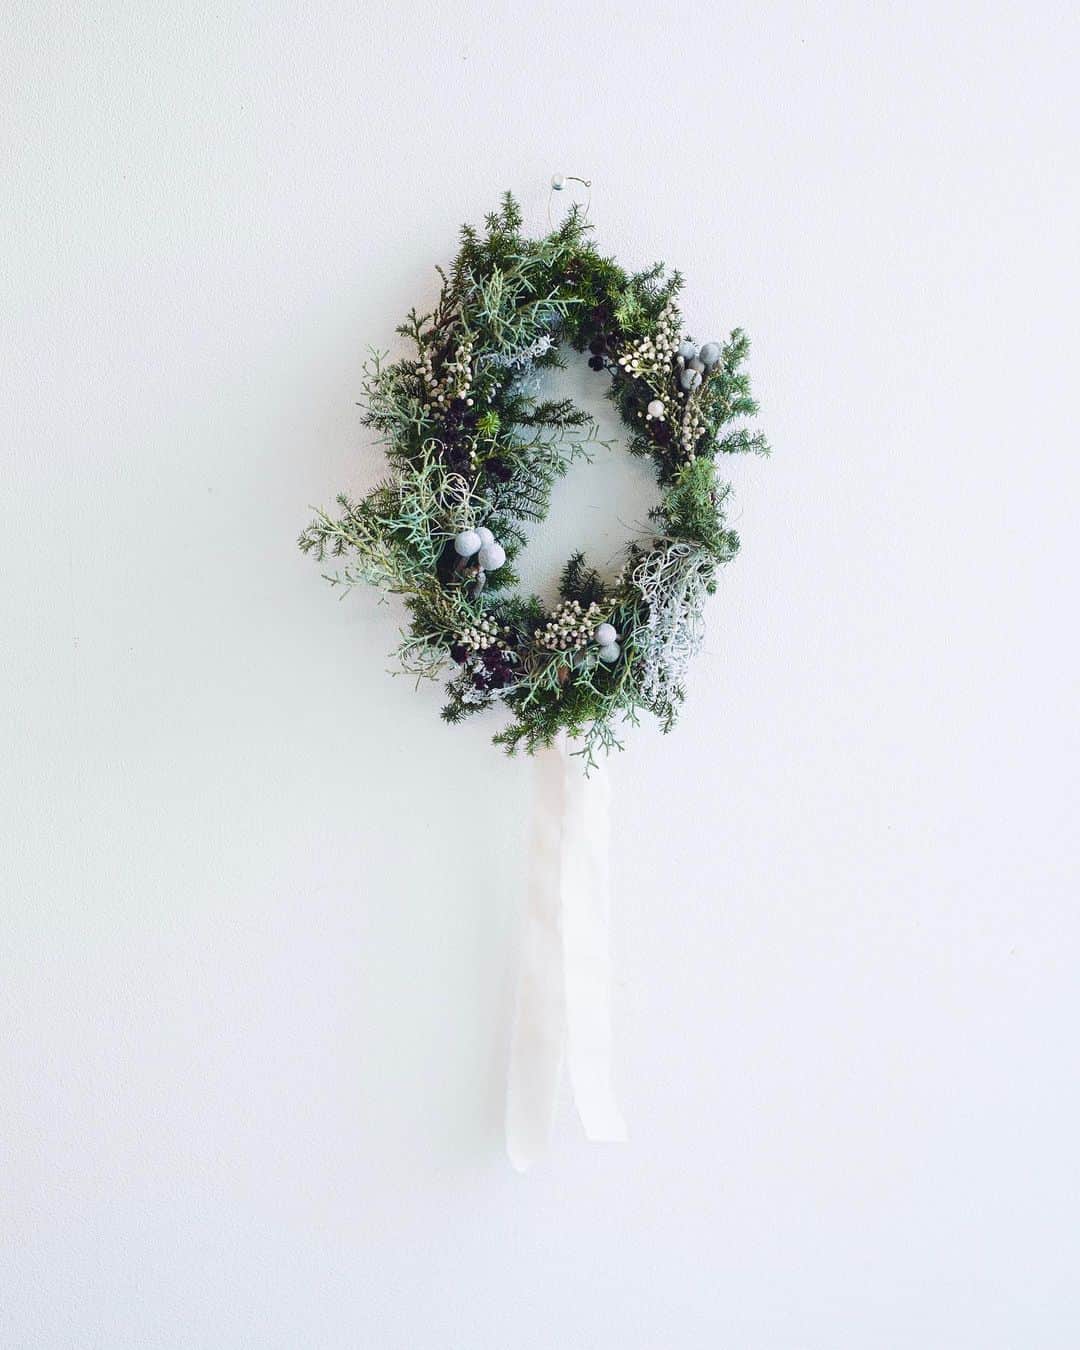 増田由希子のインスタグラム：「Pre-order! Fresh Christmas Wreath🎄 #christmas #Wreath #freshwreath #winterwreath #simplicity  🌲クリスマスリース予約販売のお知らせ🌲  今年もクリスマスリースの予約販売をさせていただくこととなりました。 BOWKNOT様 @bowknot_store にて、お取扱いいただきます。  【　リース「森の小道」 】 静寂に包まれた、神秘的な冬の森の風景をイメージしました。 赤蔓リースの土台に針葉樹のグリーンと3種類の実を飾っています。 神聖な森の香りに包まれたフレッシュリースをお届けいたします。  詳細は、HP、BOWKNOT様オンラインショップをご参照ください。  【予約受付期間】 2023年11月6日(月)〜11月14日(火)14時 【お届け】11月末頃 ※予定数に達し次第、販売終了となります　 【お取扱店】 BOWKNOTオンラインショップ @bowknot_store   #クリスマスリース　#リース」